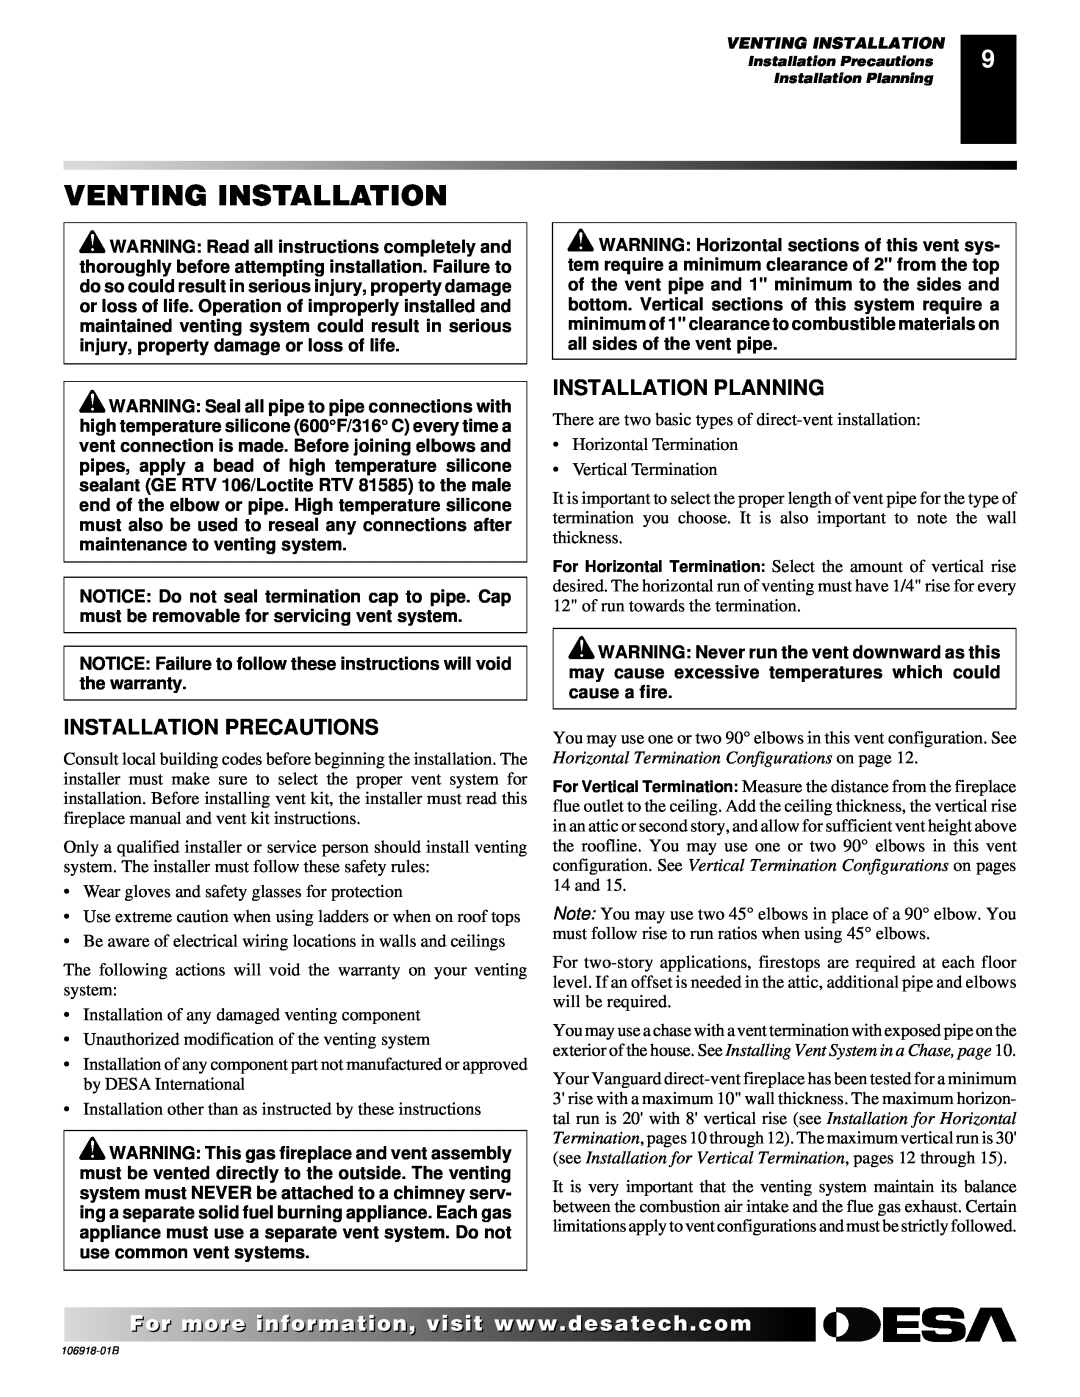 Desa VDDVF36STN/STP, VDDVF36PN/PP installation manual Venting Installation, Installation Precautions, Installation Planning 